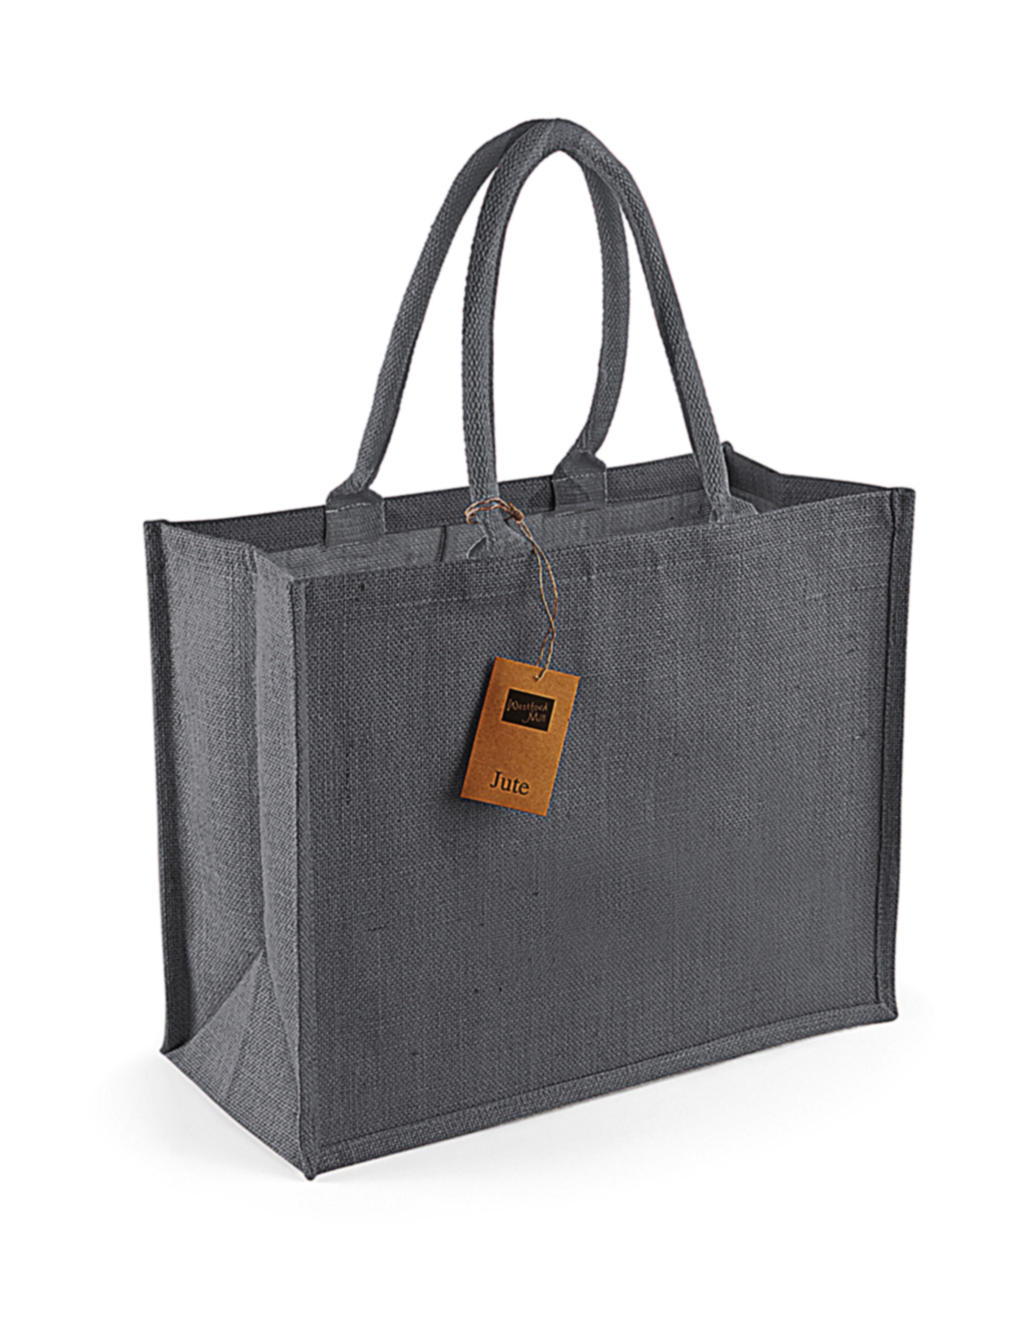  Classic Jute Shopper in Farbe Graphite Grey/Graphite Grey